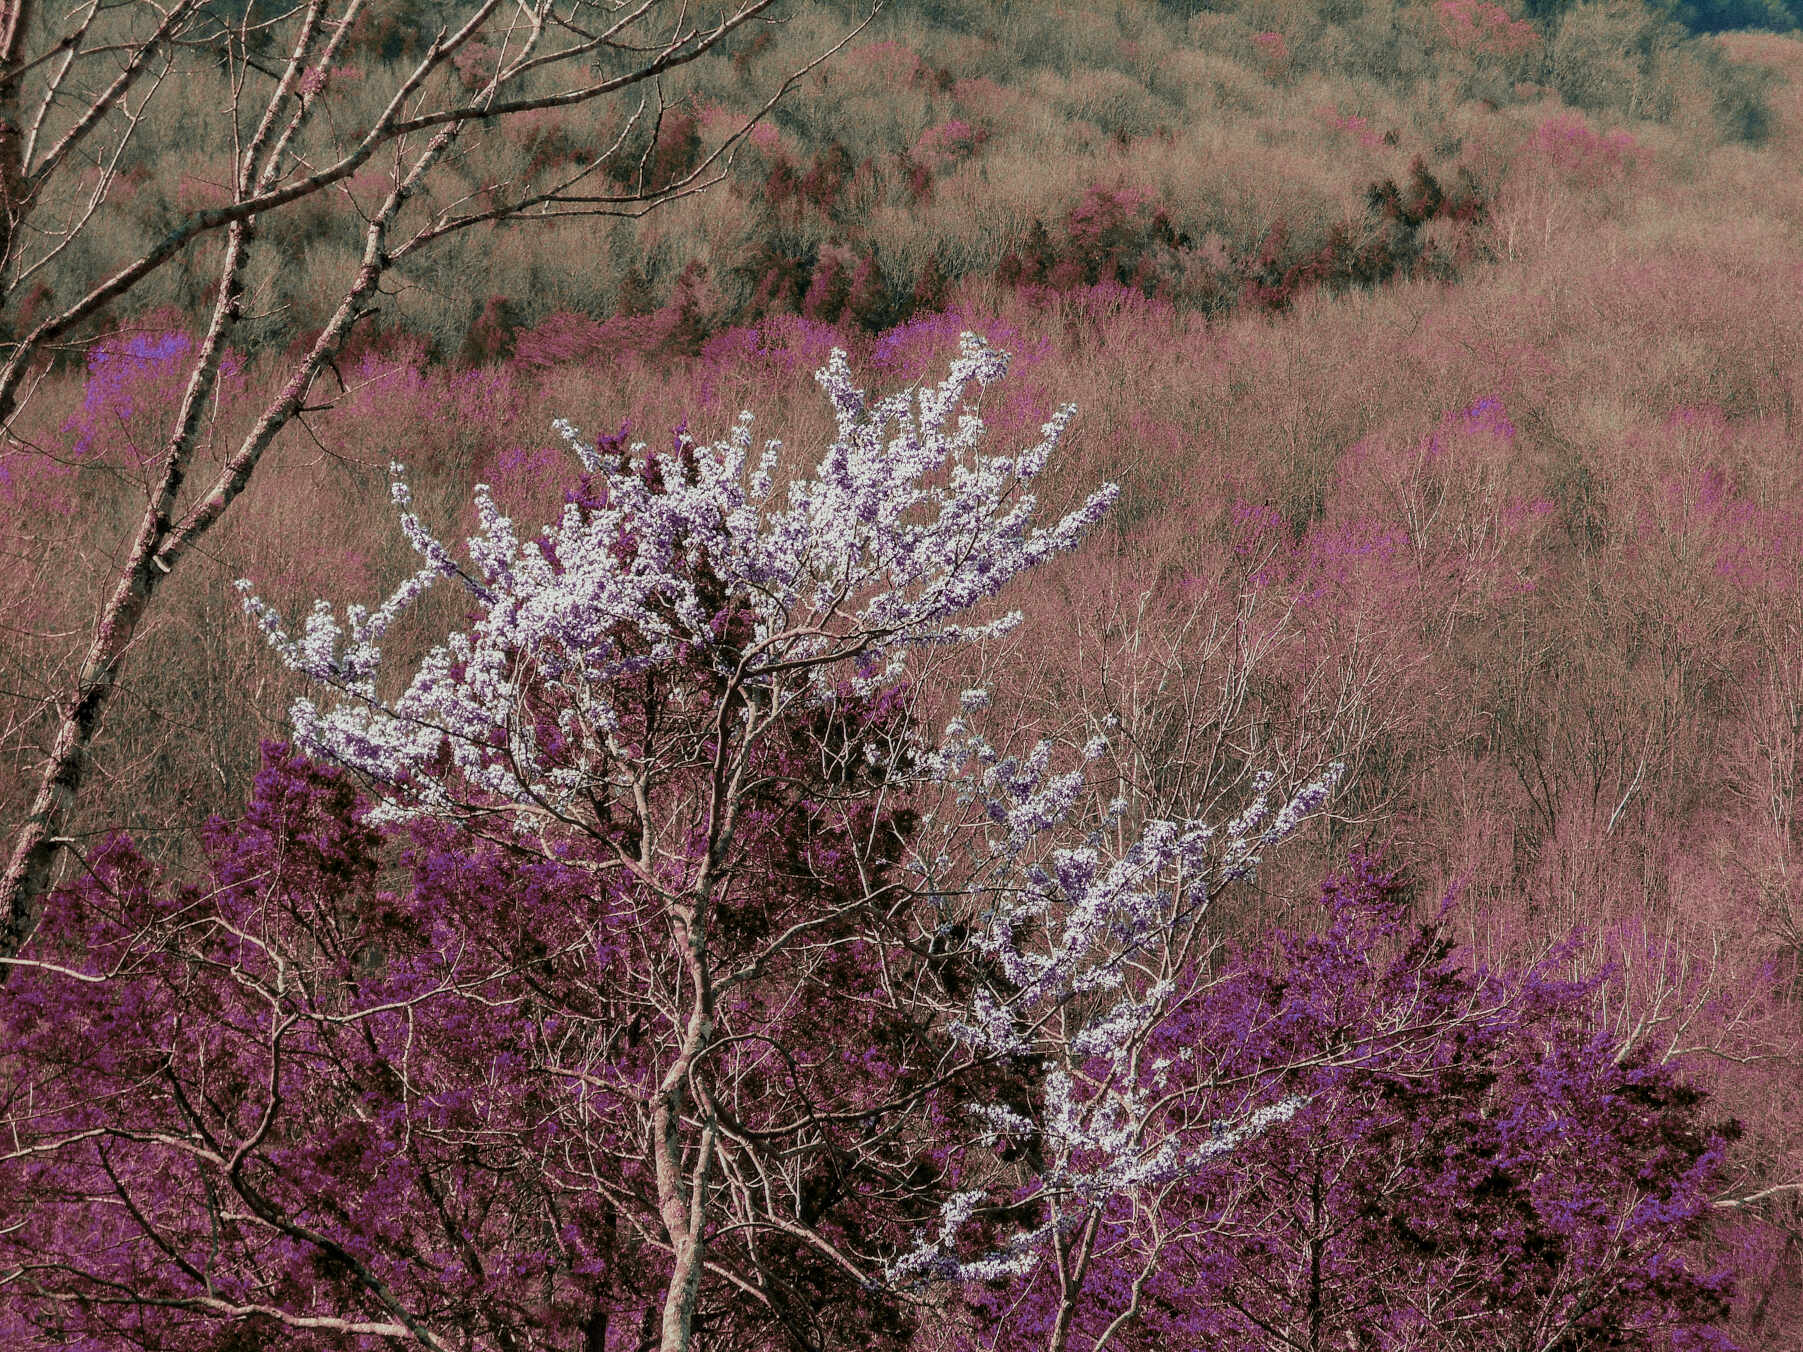 Lomochrome purple photograph